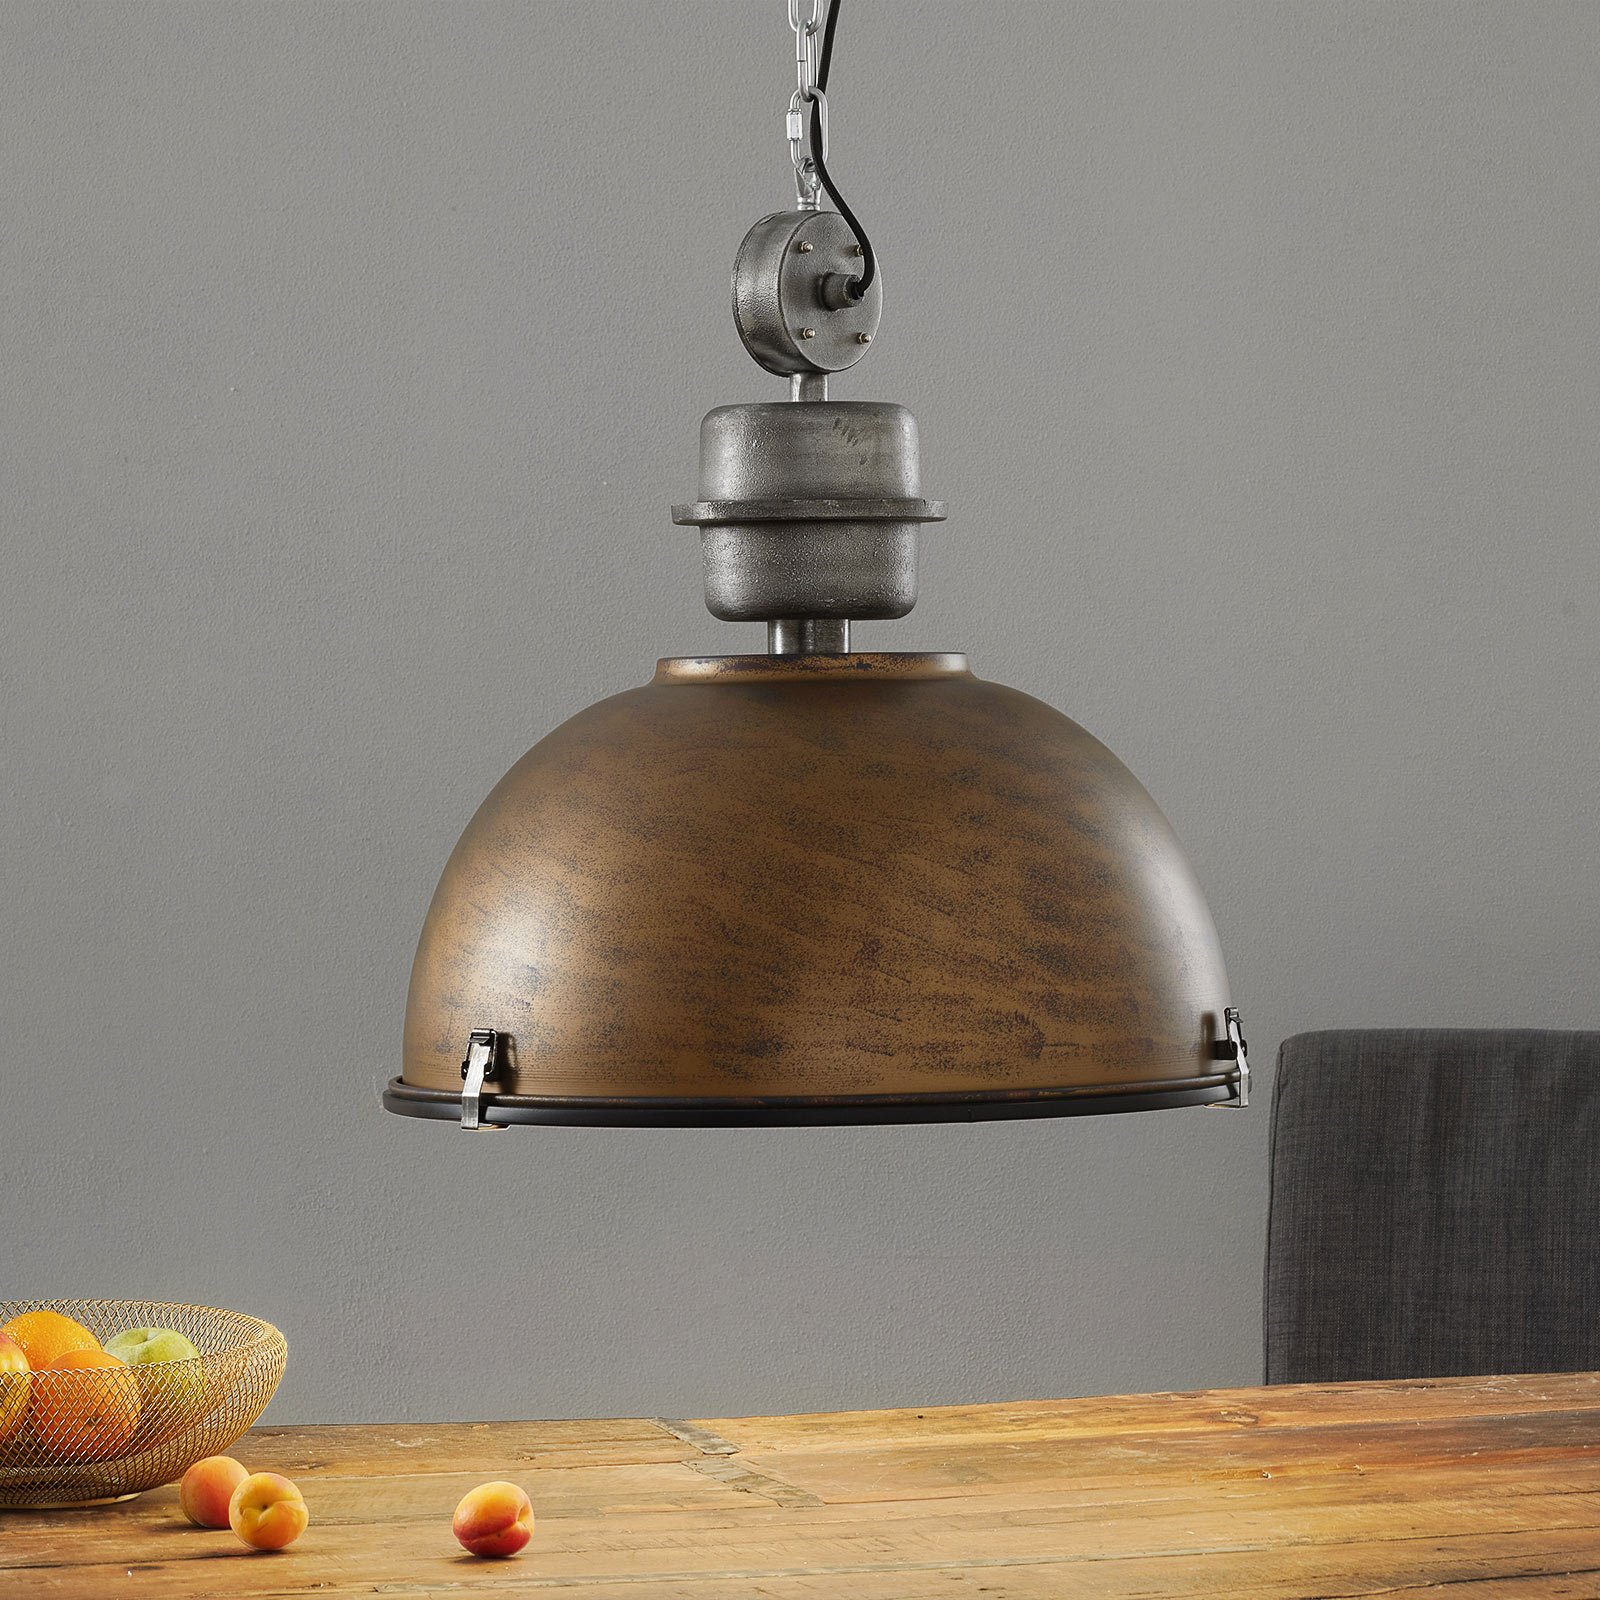 Bruine hanglamp Bikkel XXL in industrieel ontwerp